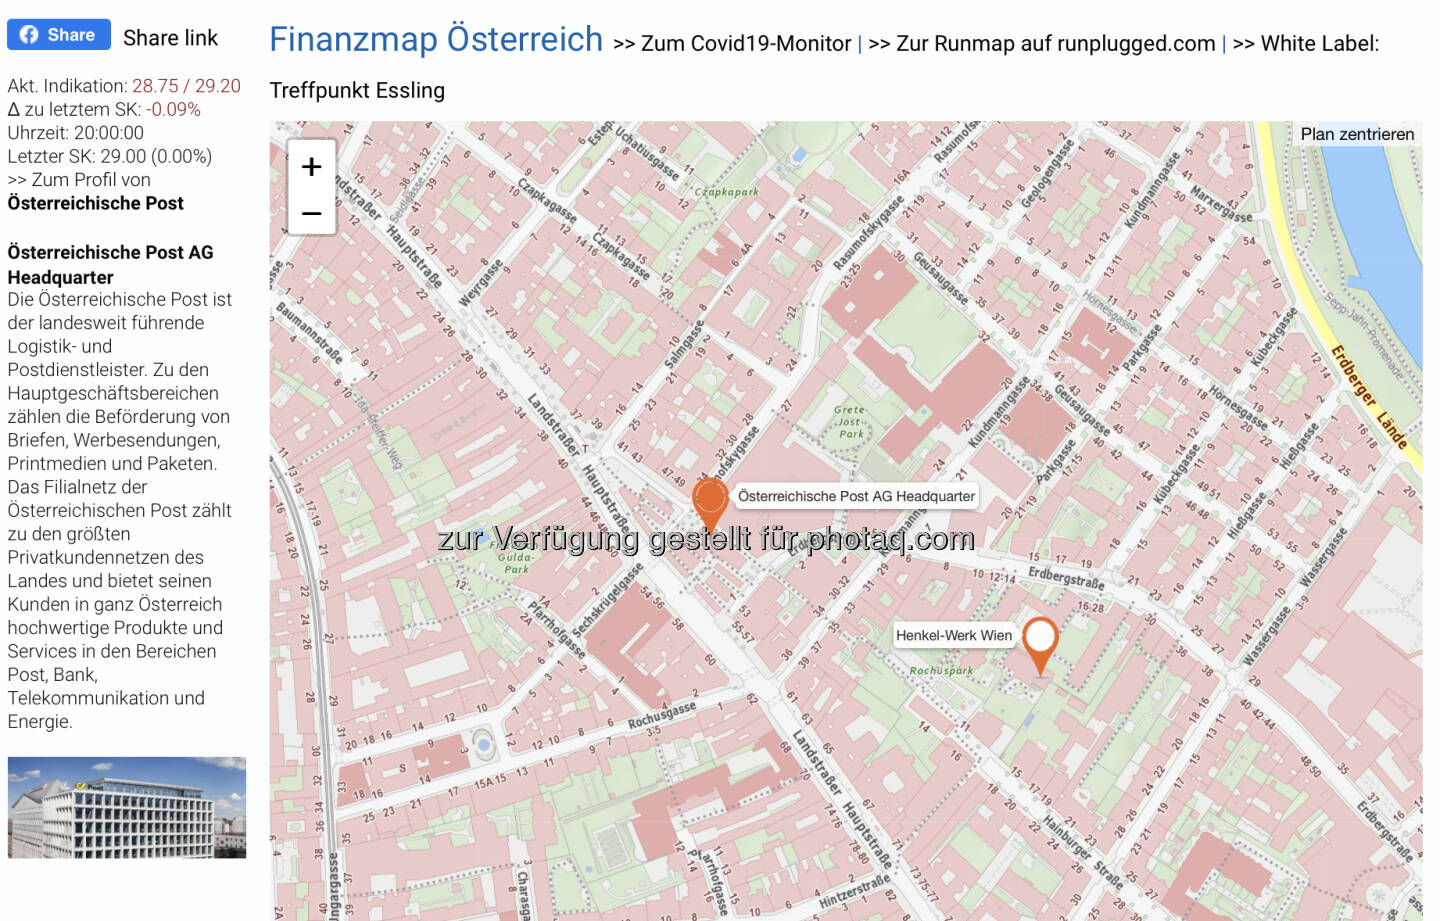 Österreichische Post AG Headquarter auf http://www.boerse-social.com/finanzmap